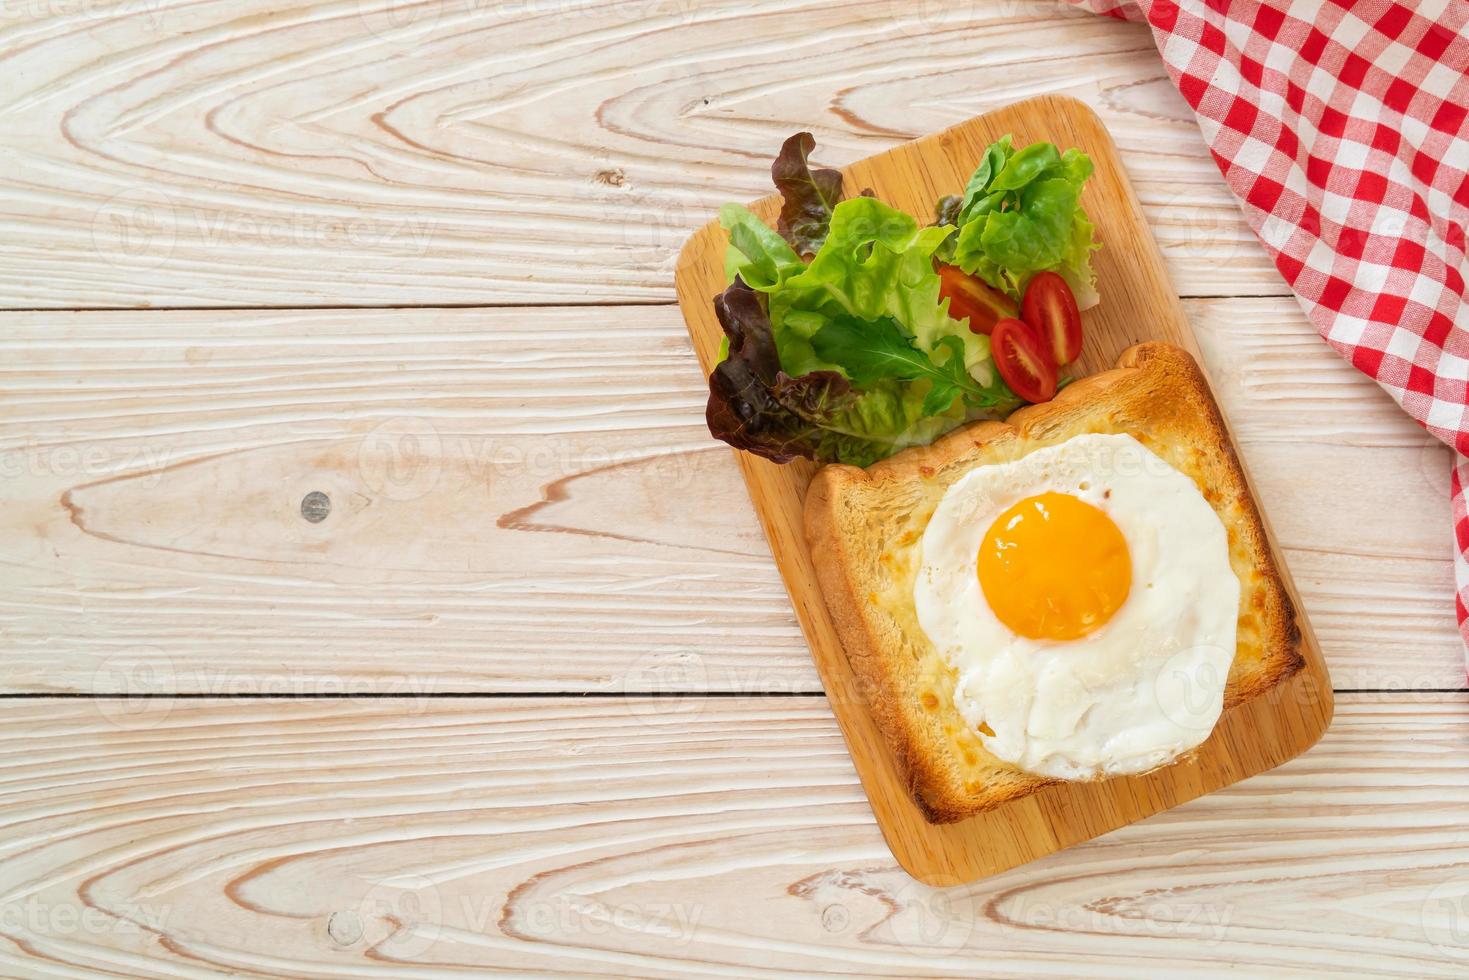 pane casereccio tostato con formaggio e uovo fritto sopra con insalata di verdure per colazione foto